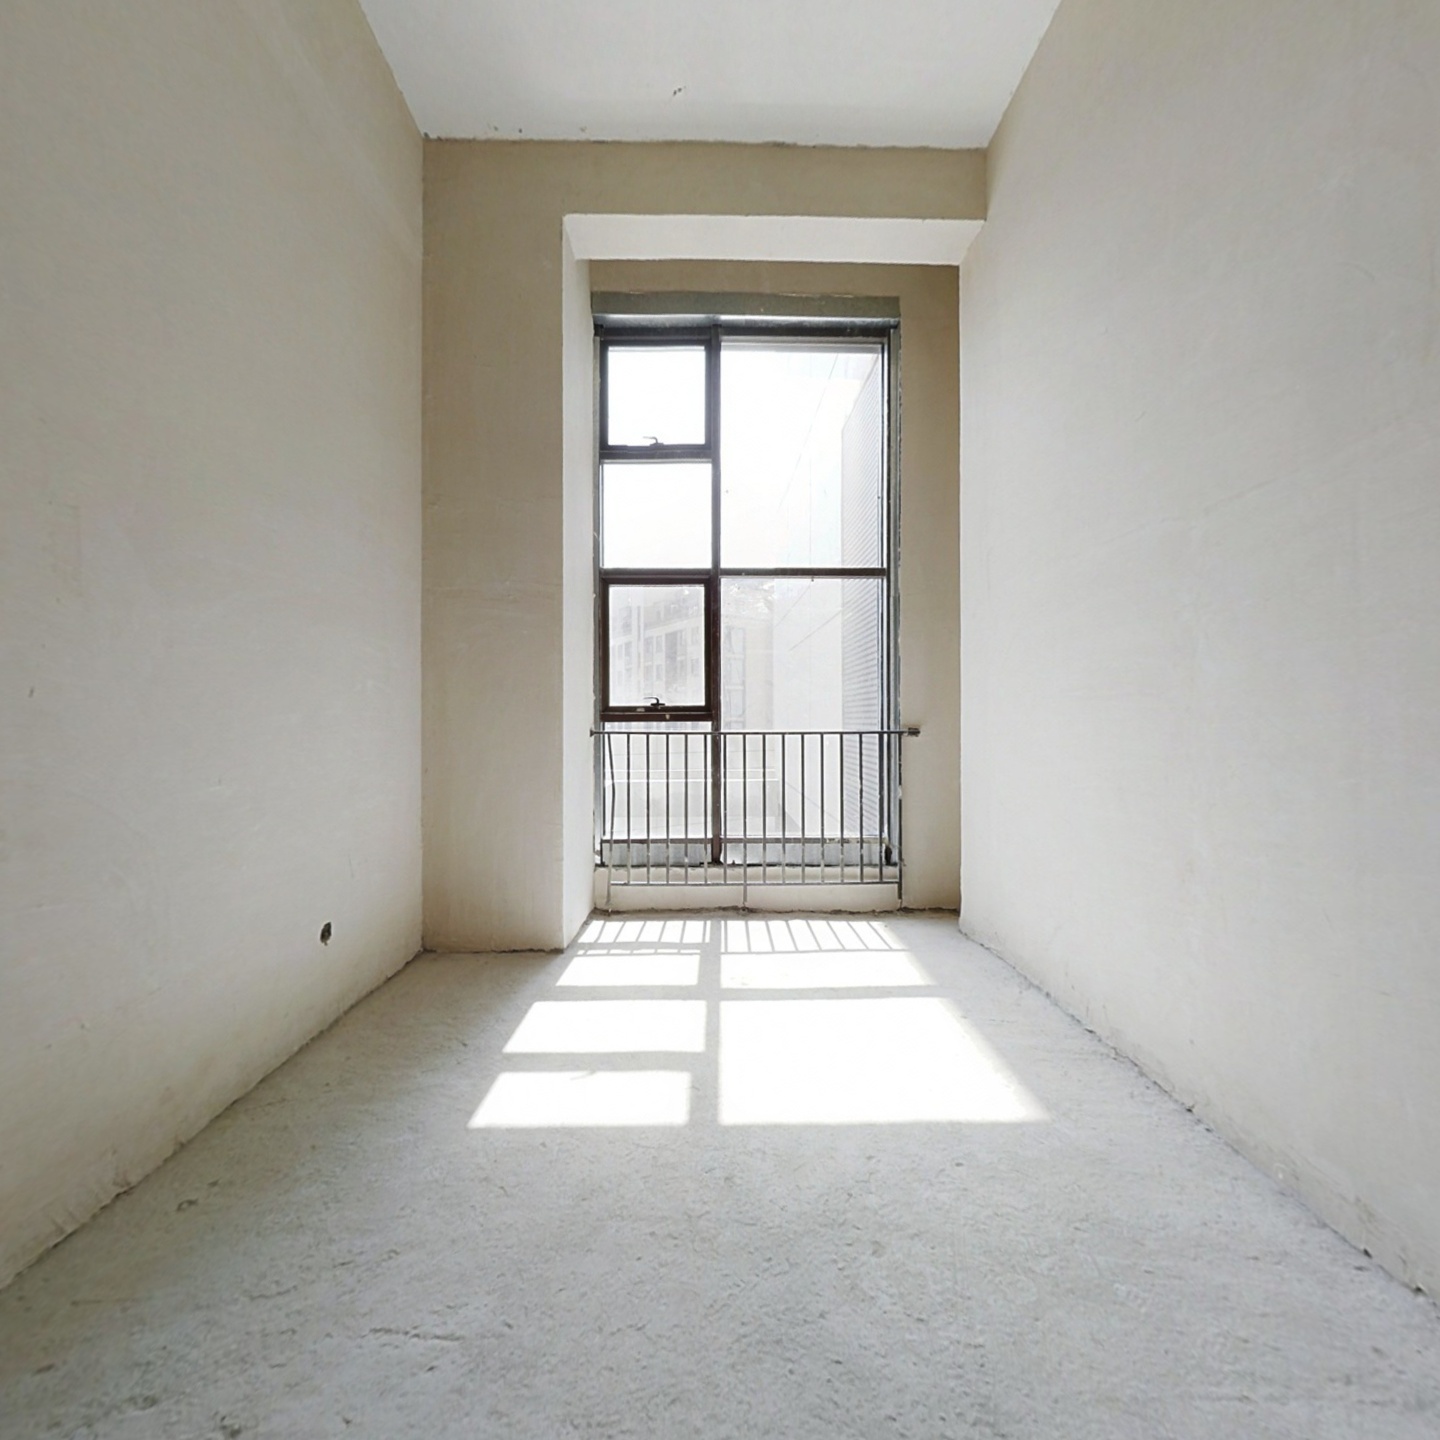 鄞州区东部新城明湖板块公寓出售，毛坯房可分割2层。